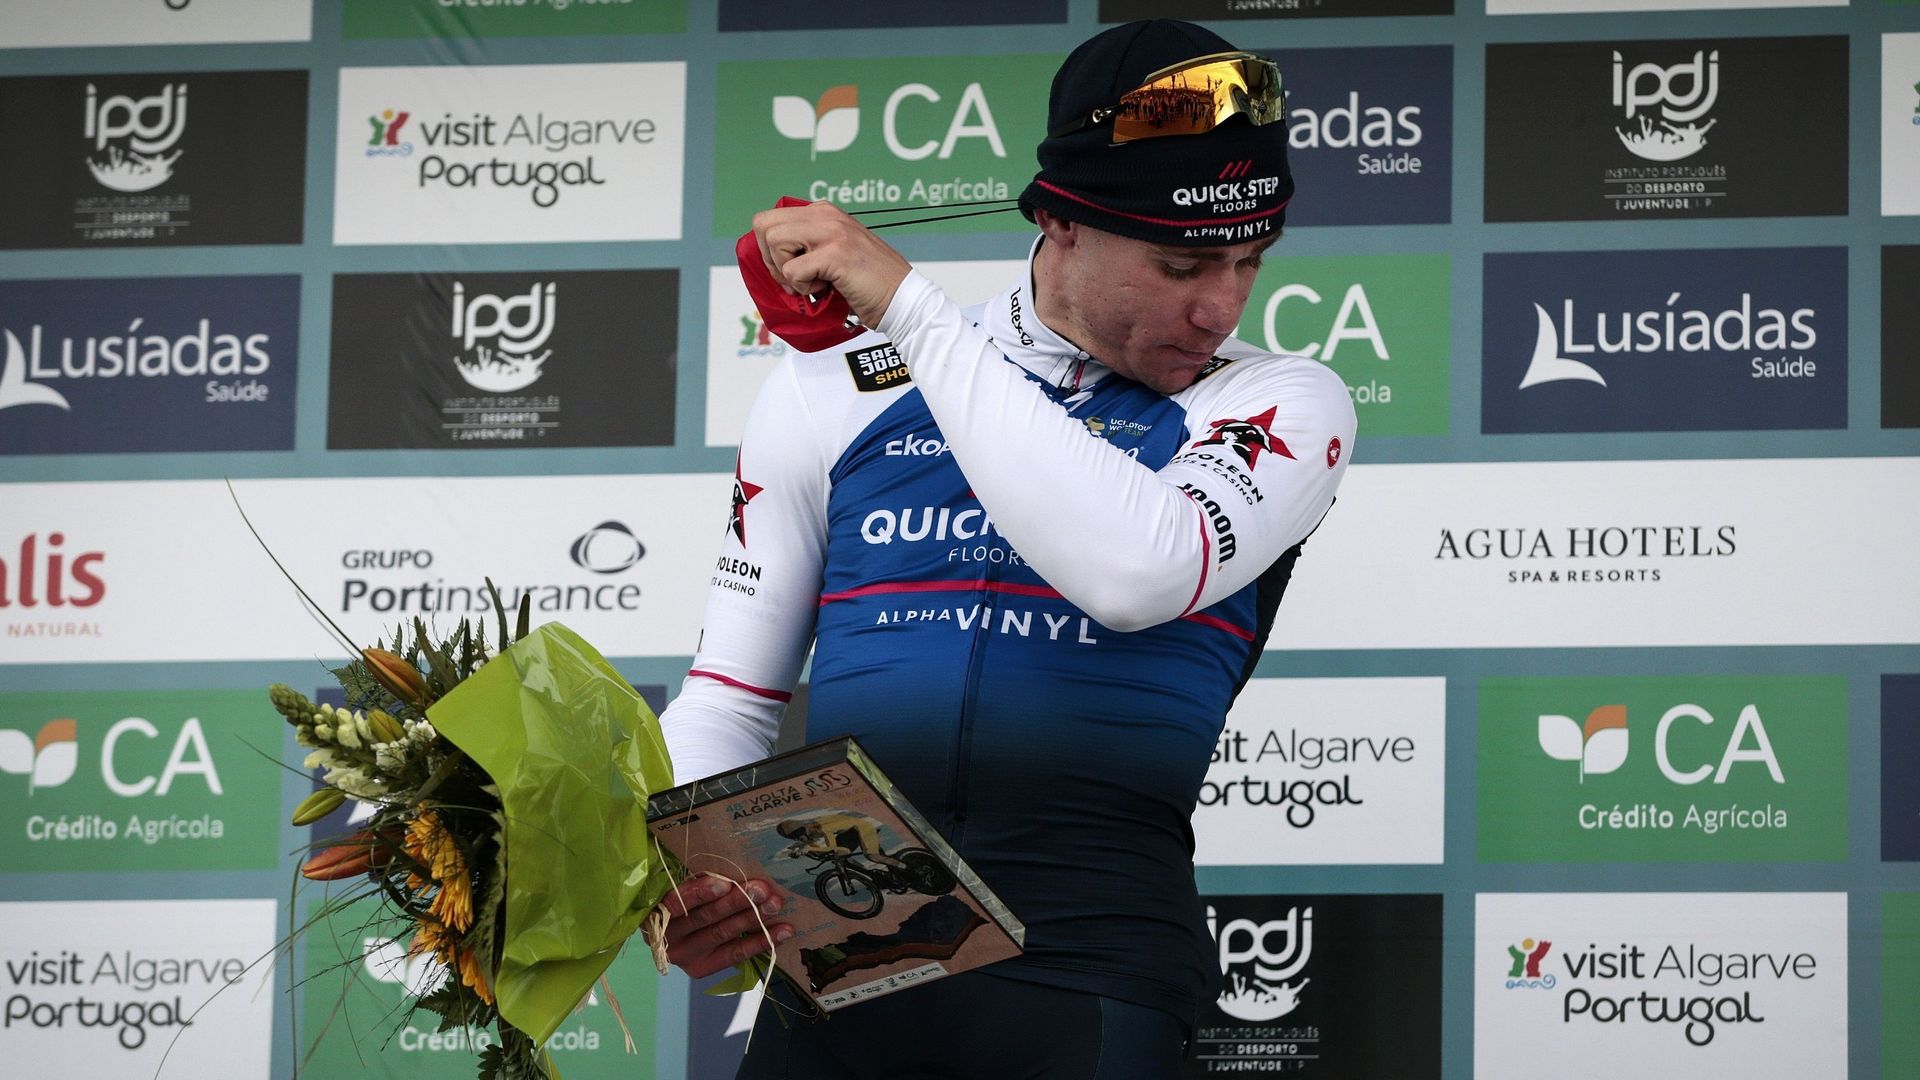 Le Néerlandais Fabio Jakobsen (Quick-Step Alpha Vinyl) a remporté au sprint la 3e étape du Tour du Portugal cycliste (2.Pro), la plus longue de cette 48e édition, disputée sur 209,1 km entre Almodôvar et Faro.